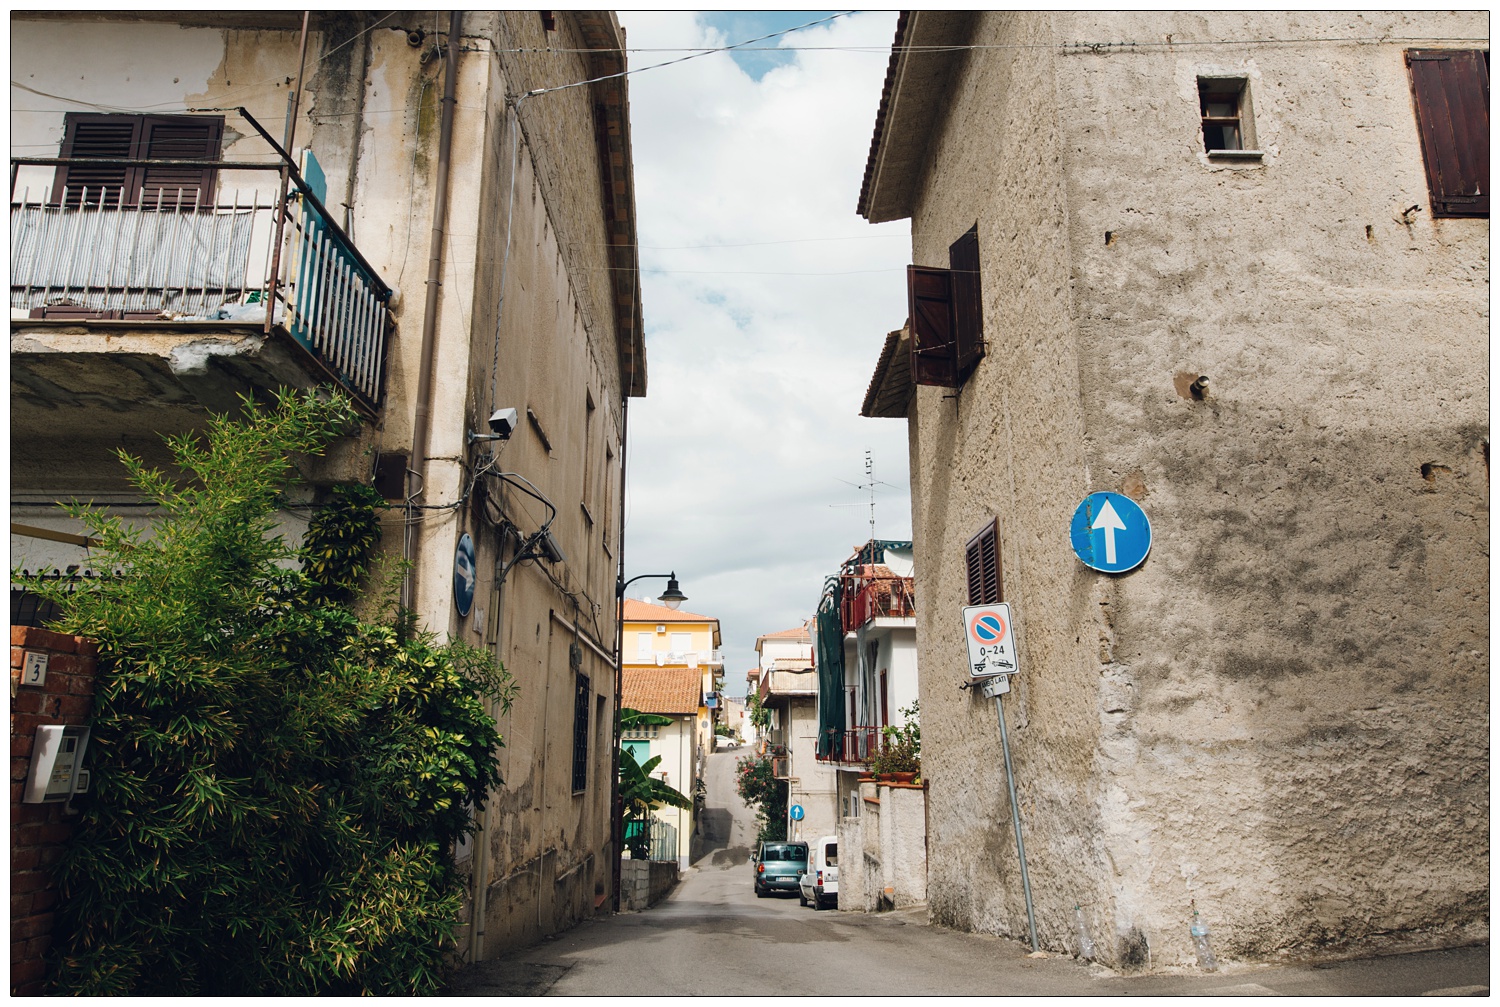 homes along the streets of Santa Maria di Castellabate